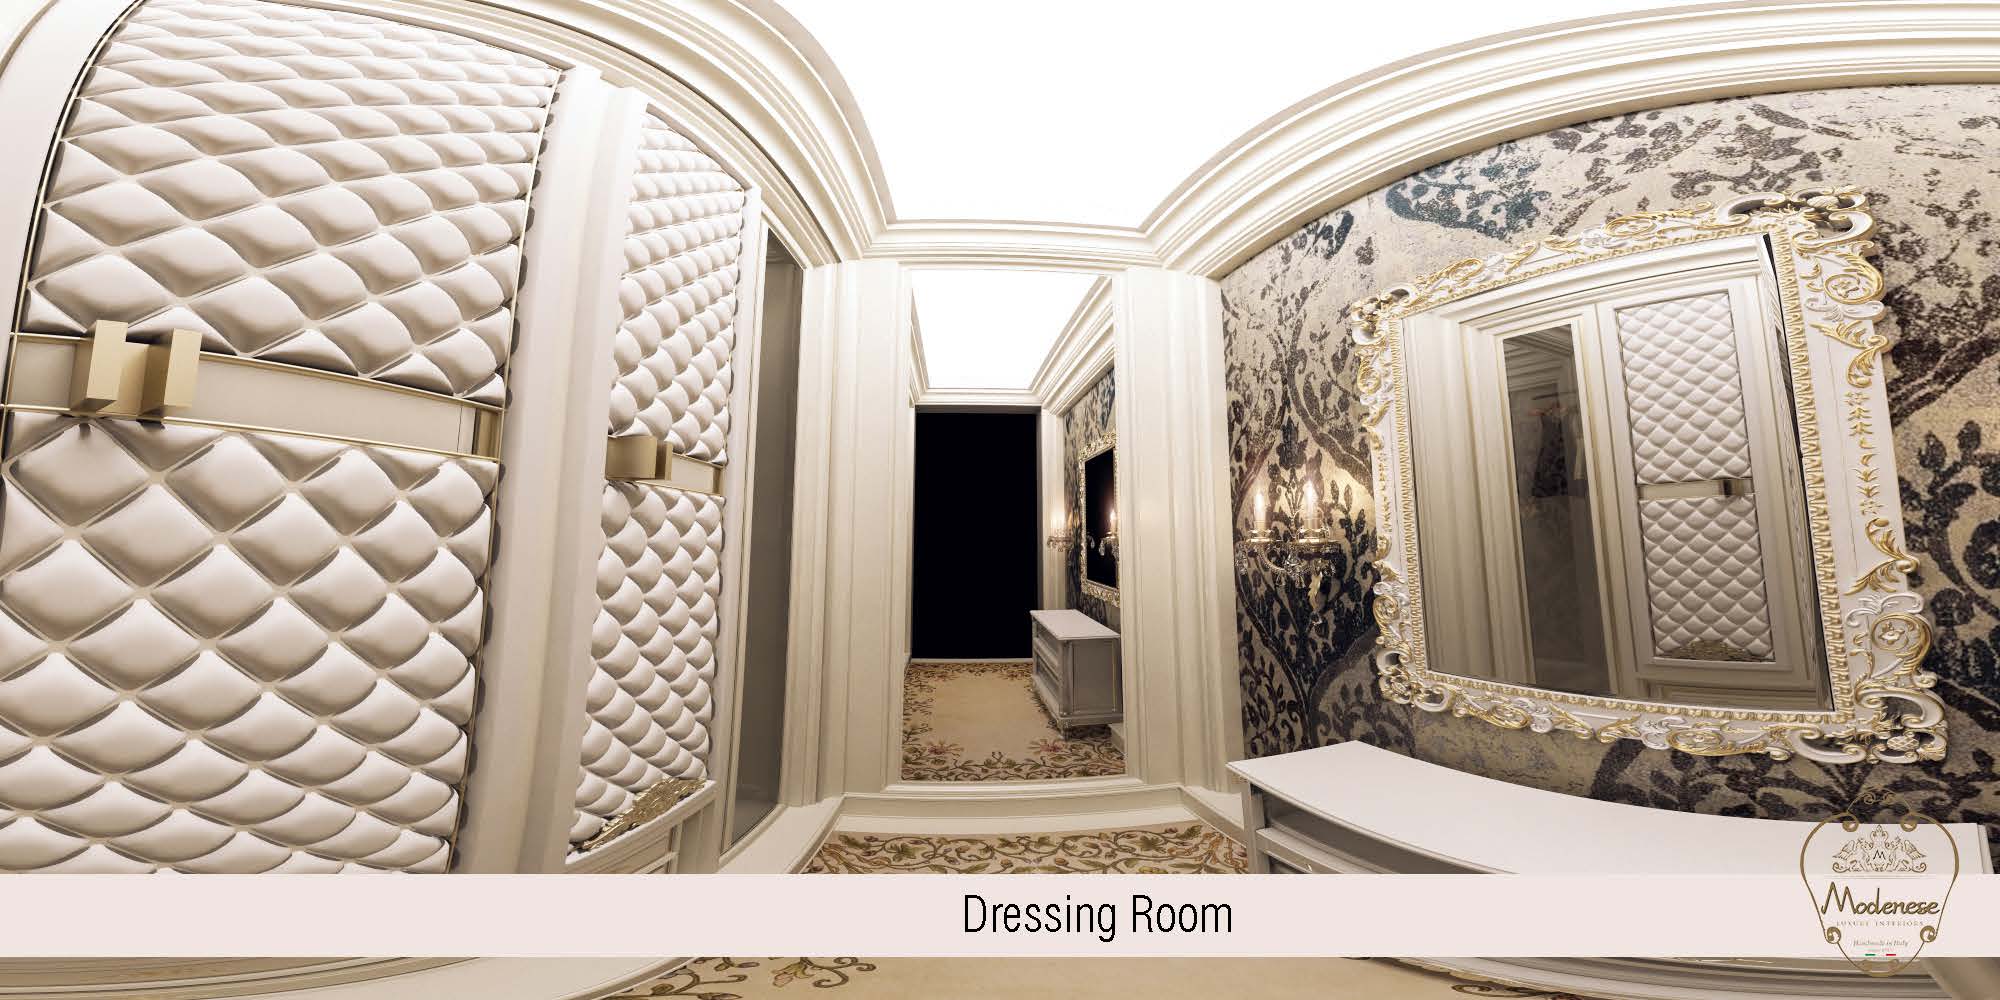 Premium furniture manufacturing. Elegant living room design idea.Best Interior Design Services In Marbella, Spain